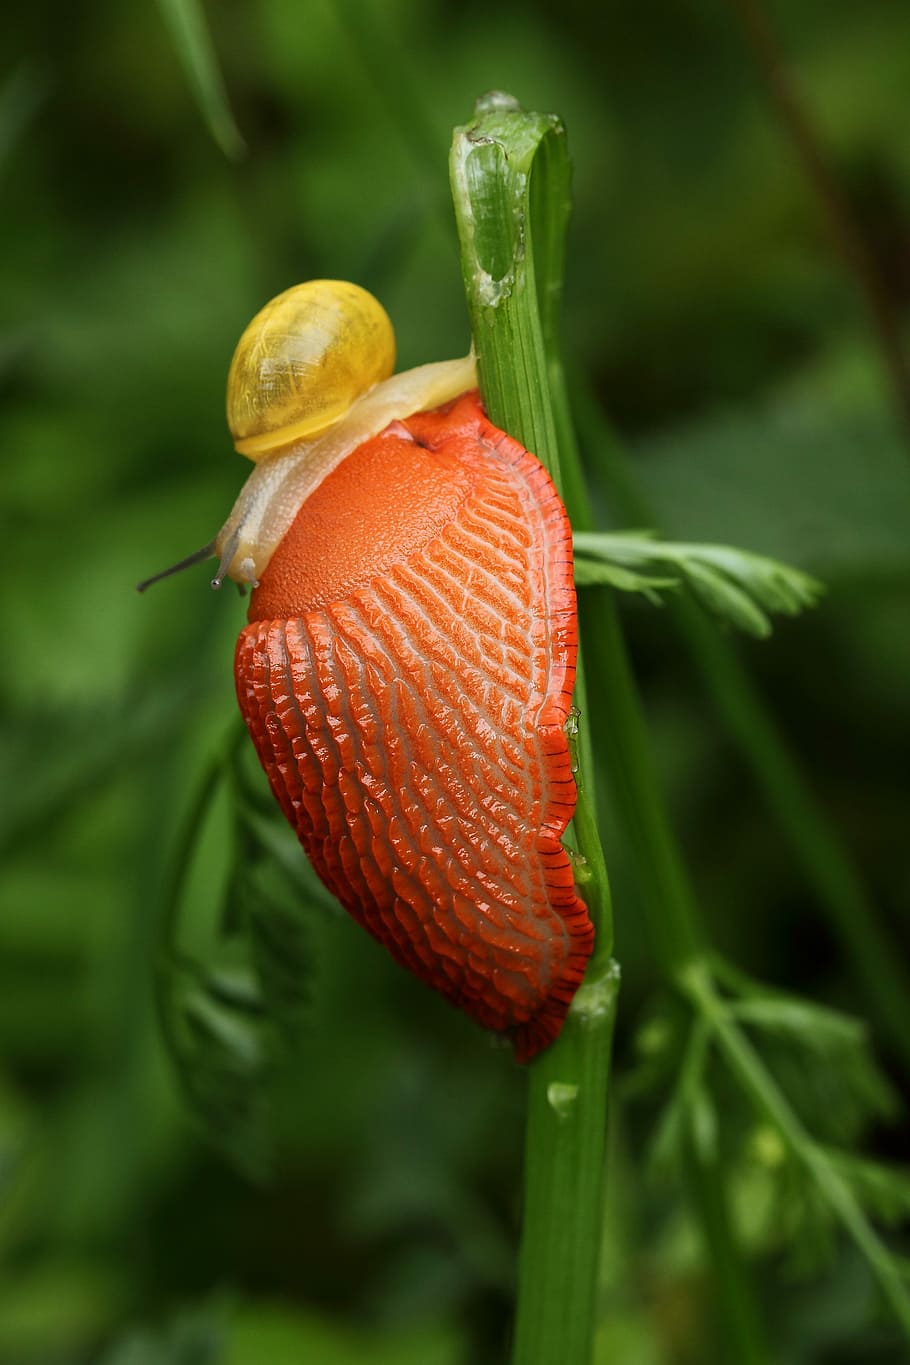 slug, orange, snail, close-up, orange color, plant, focus on foreground, mollusk, green color, gastropod